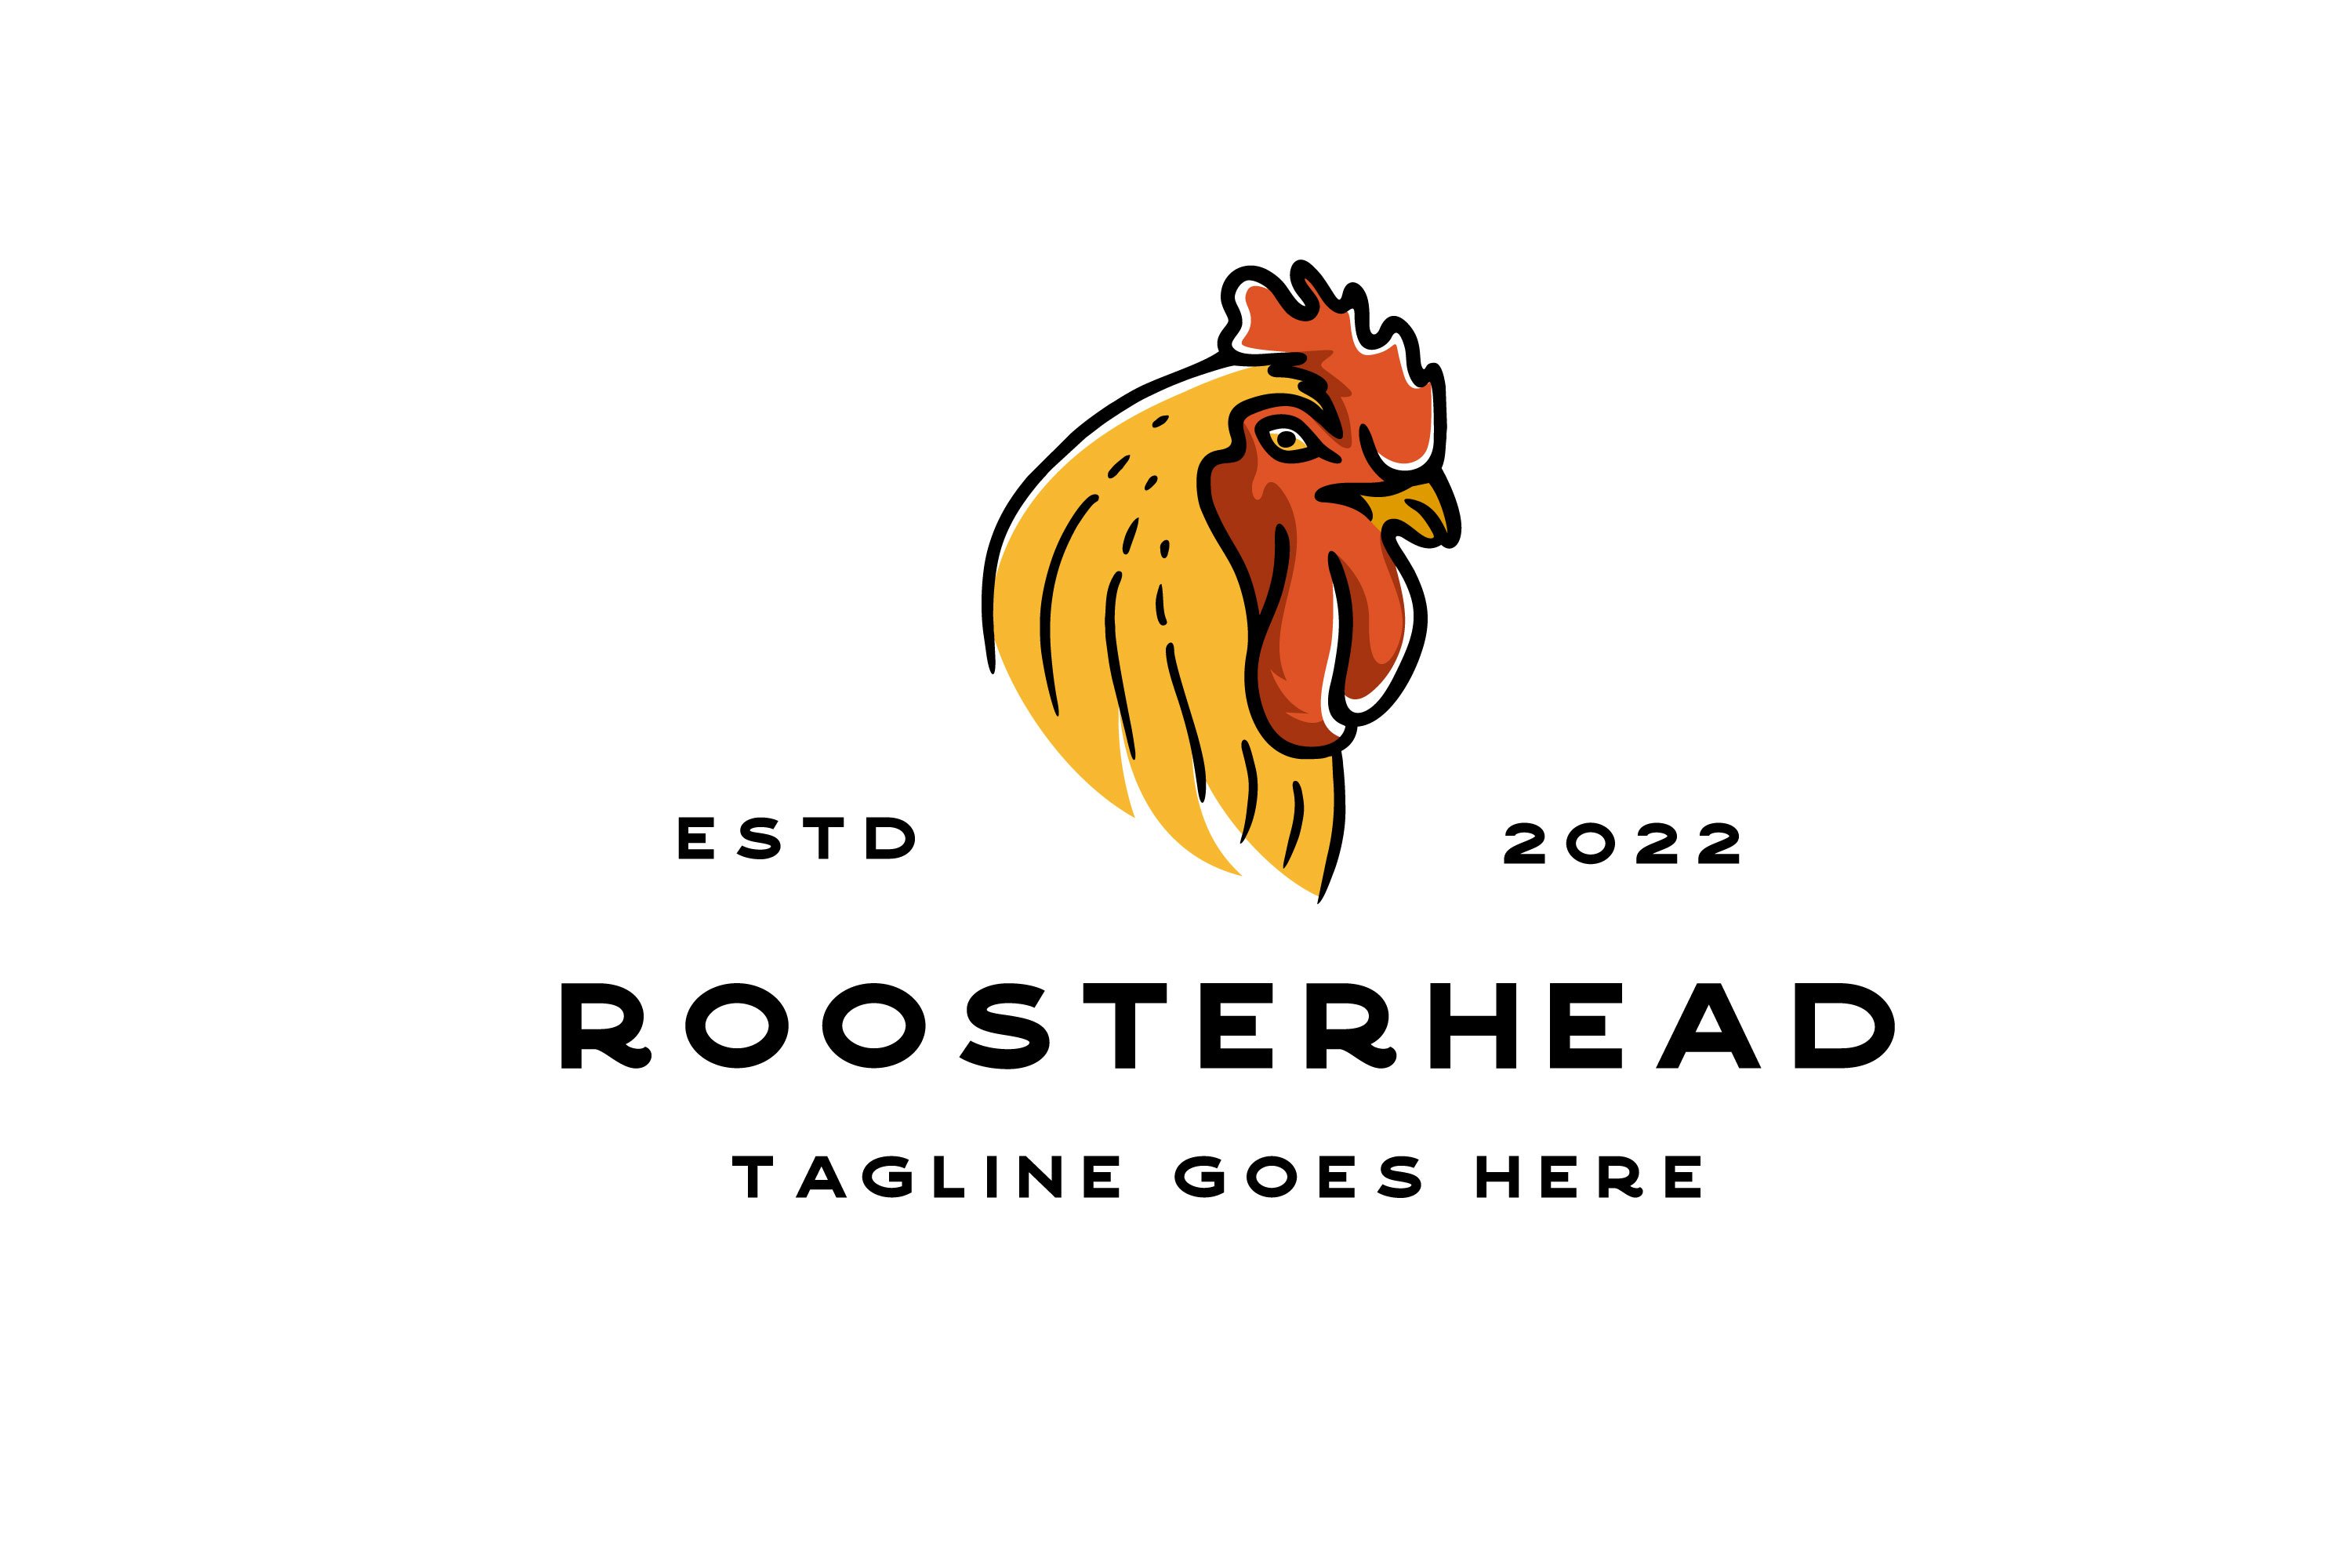 Vintage Rooster Head Logo Design cover image.